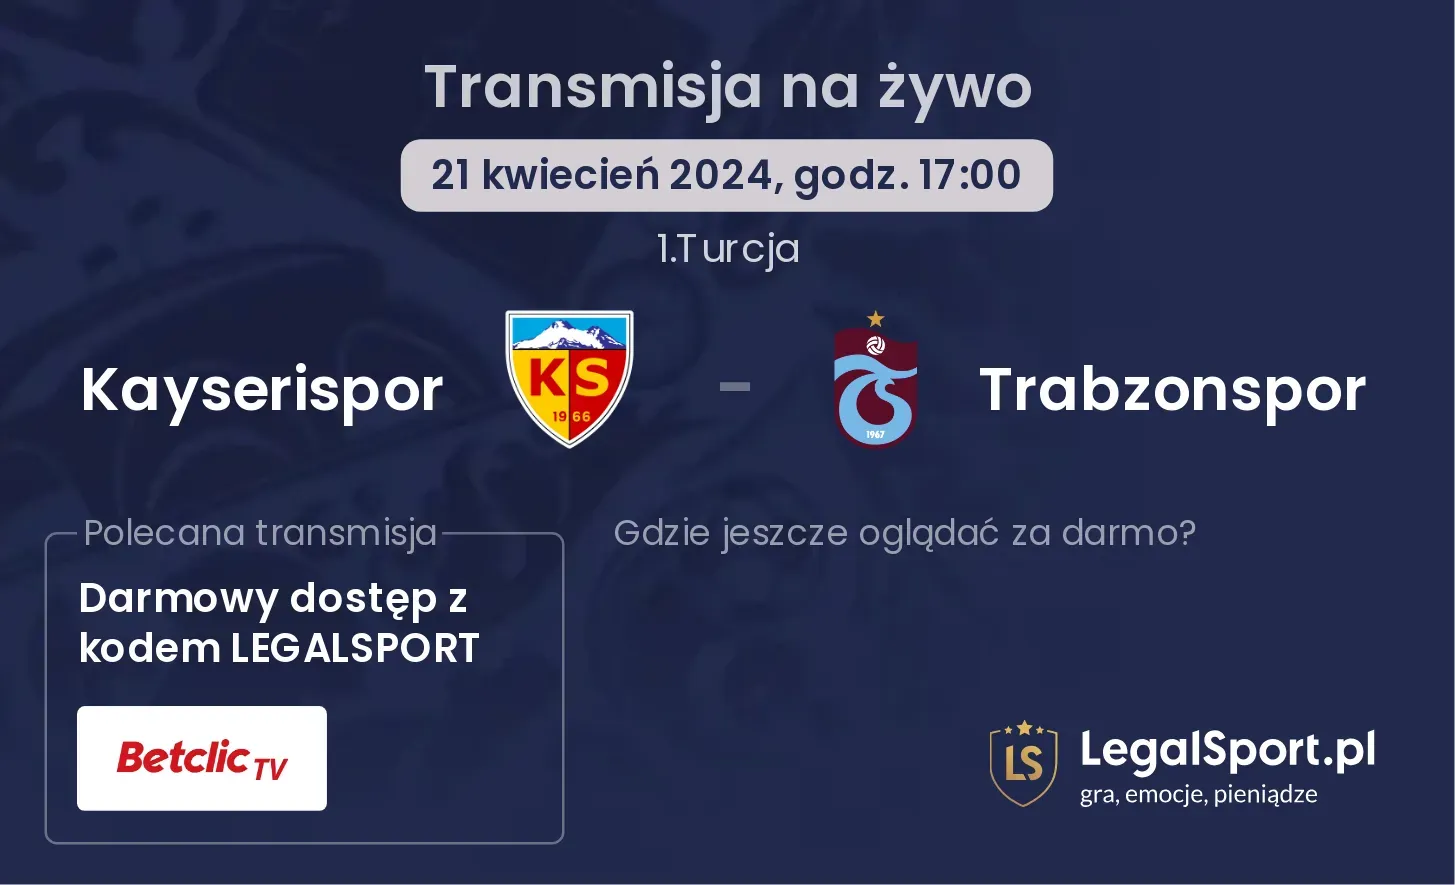 Kayserispor - Trabzonspor transmisja na żywo